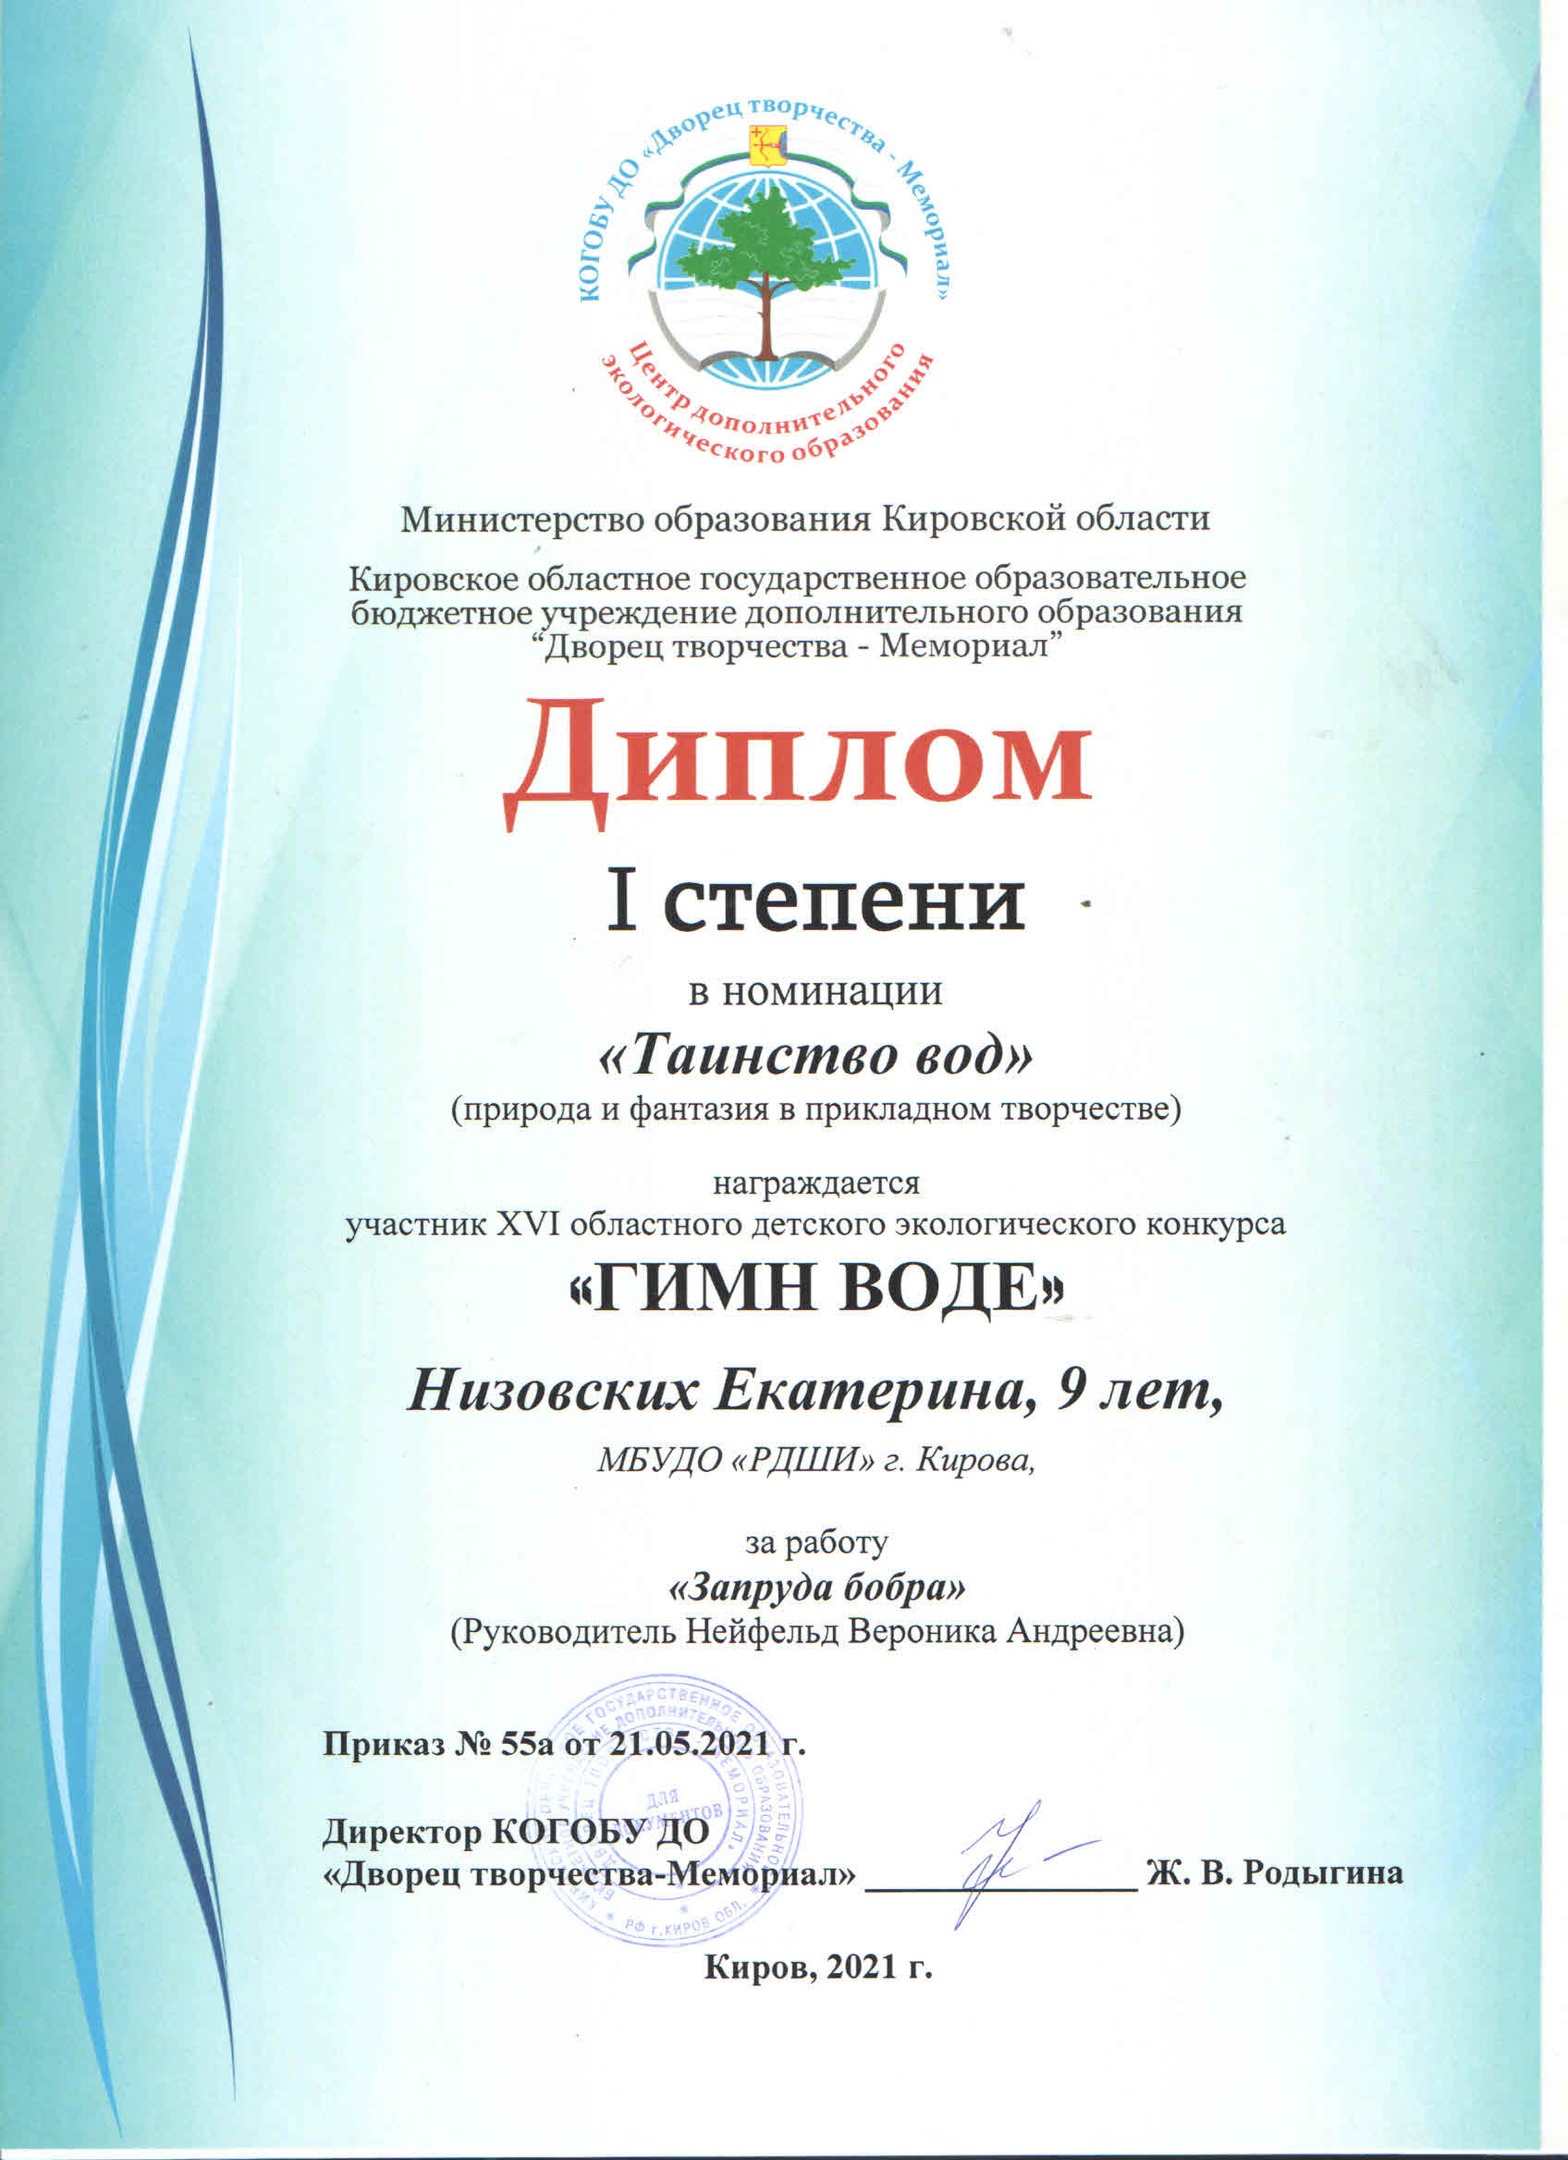 Поздравляем победителей и призеров XVI областного детского экологического конкурса «Гимн воде»